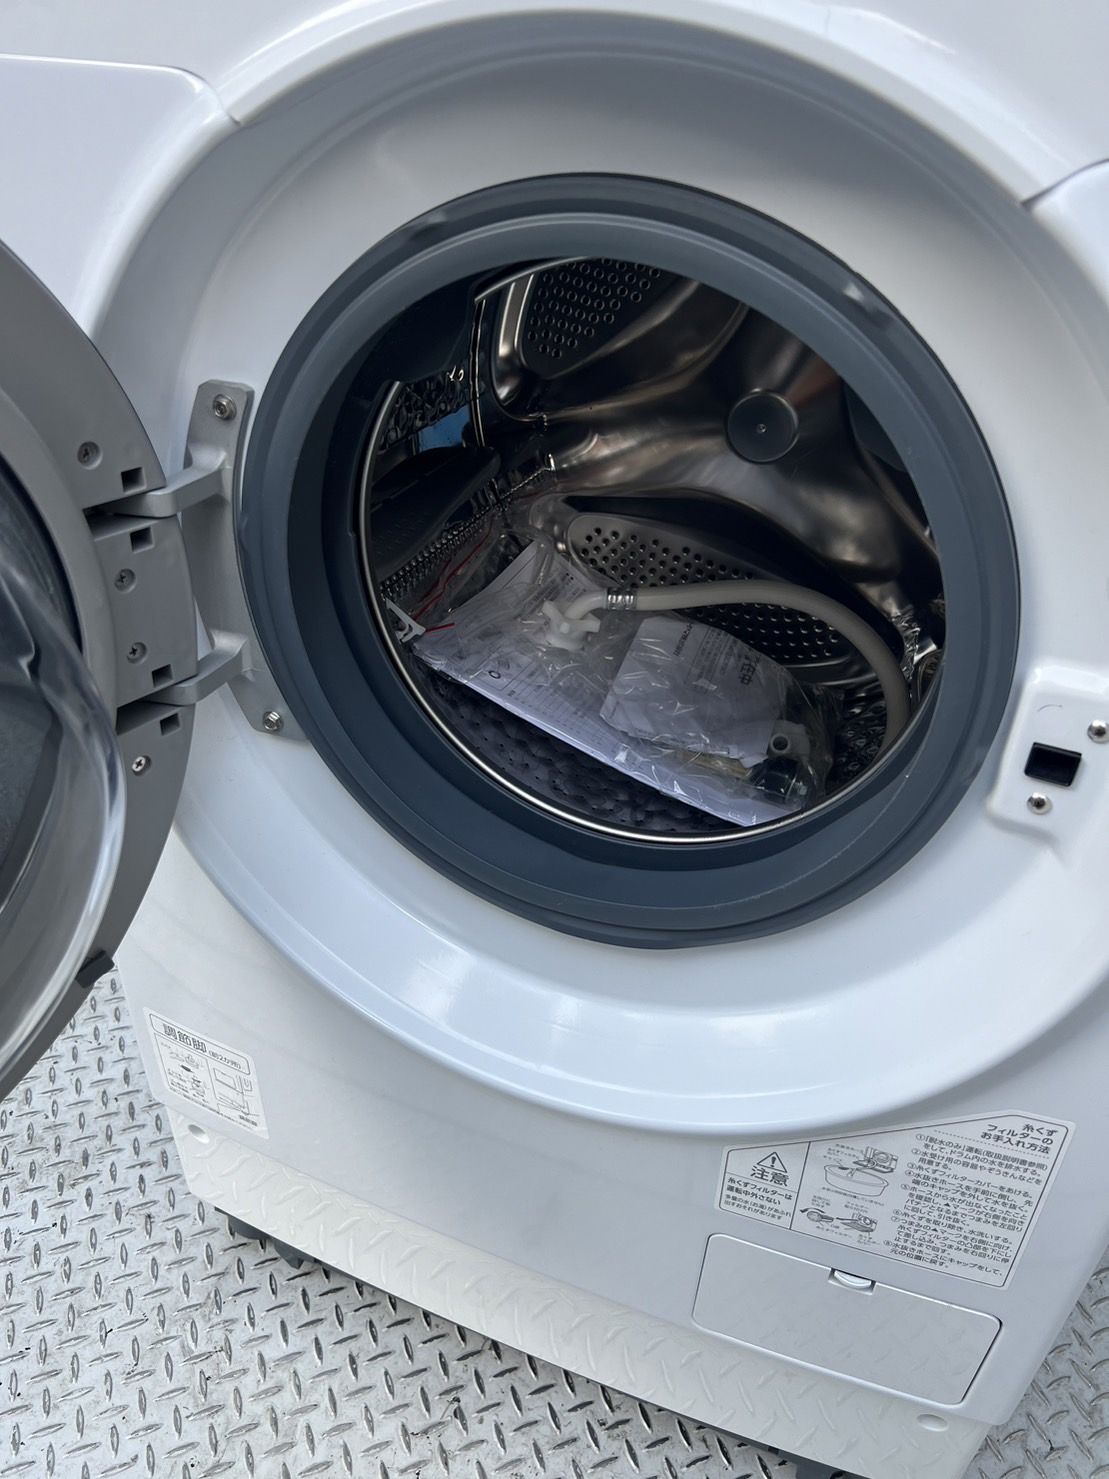 ドラム式洗濯機 IRIS OHYAMA HDK832A買取、出張買取